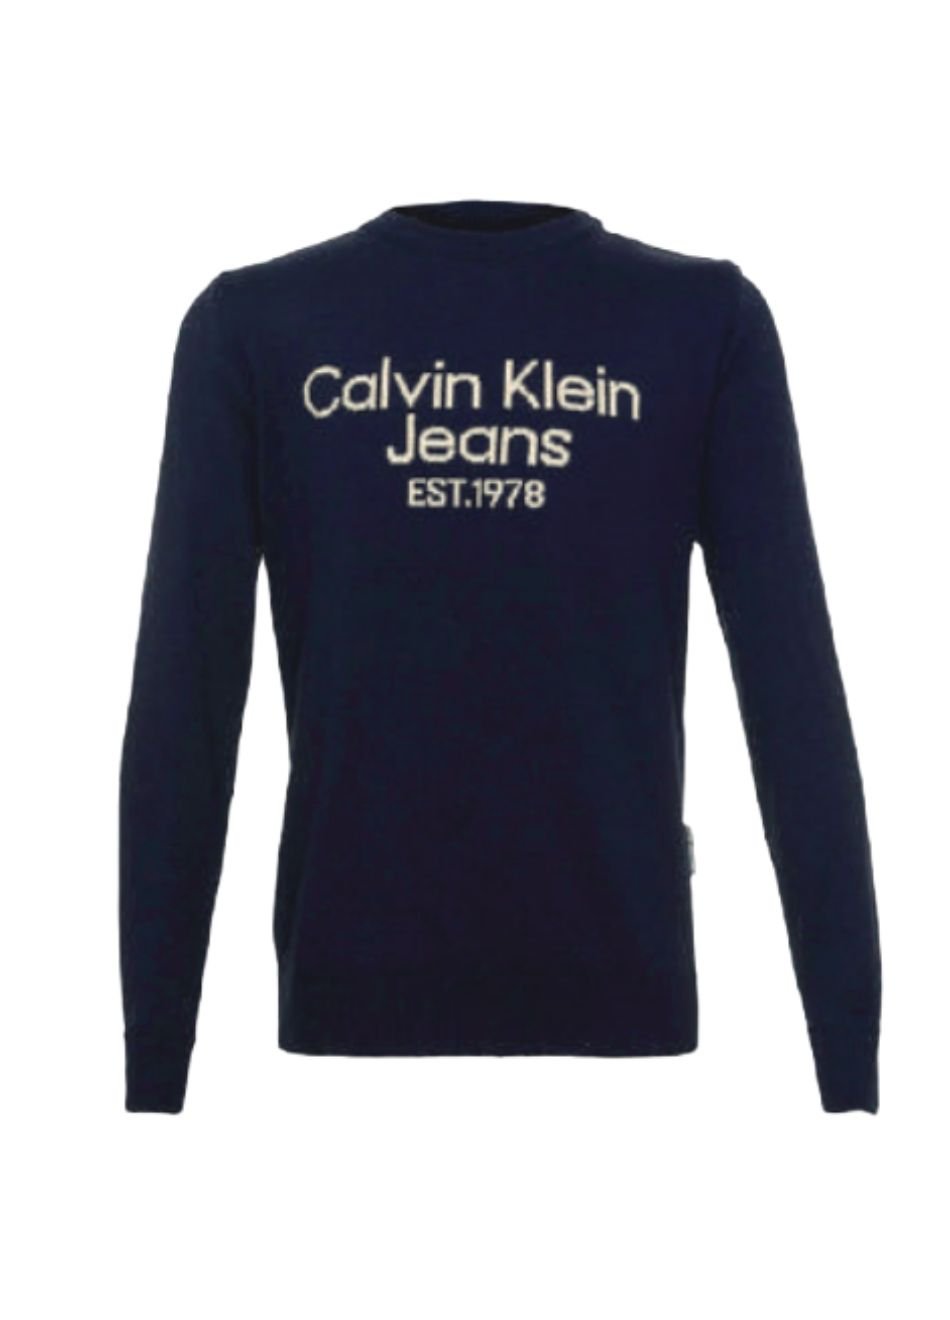 Suéter Calvin Klein Jeans Infantil CKJ 1978 Marinho